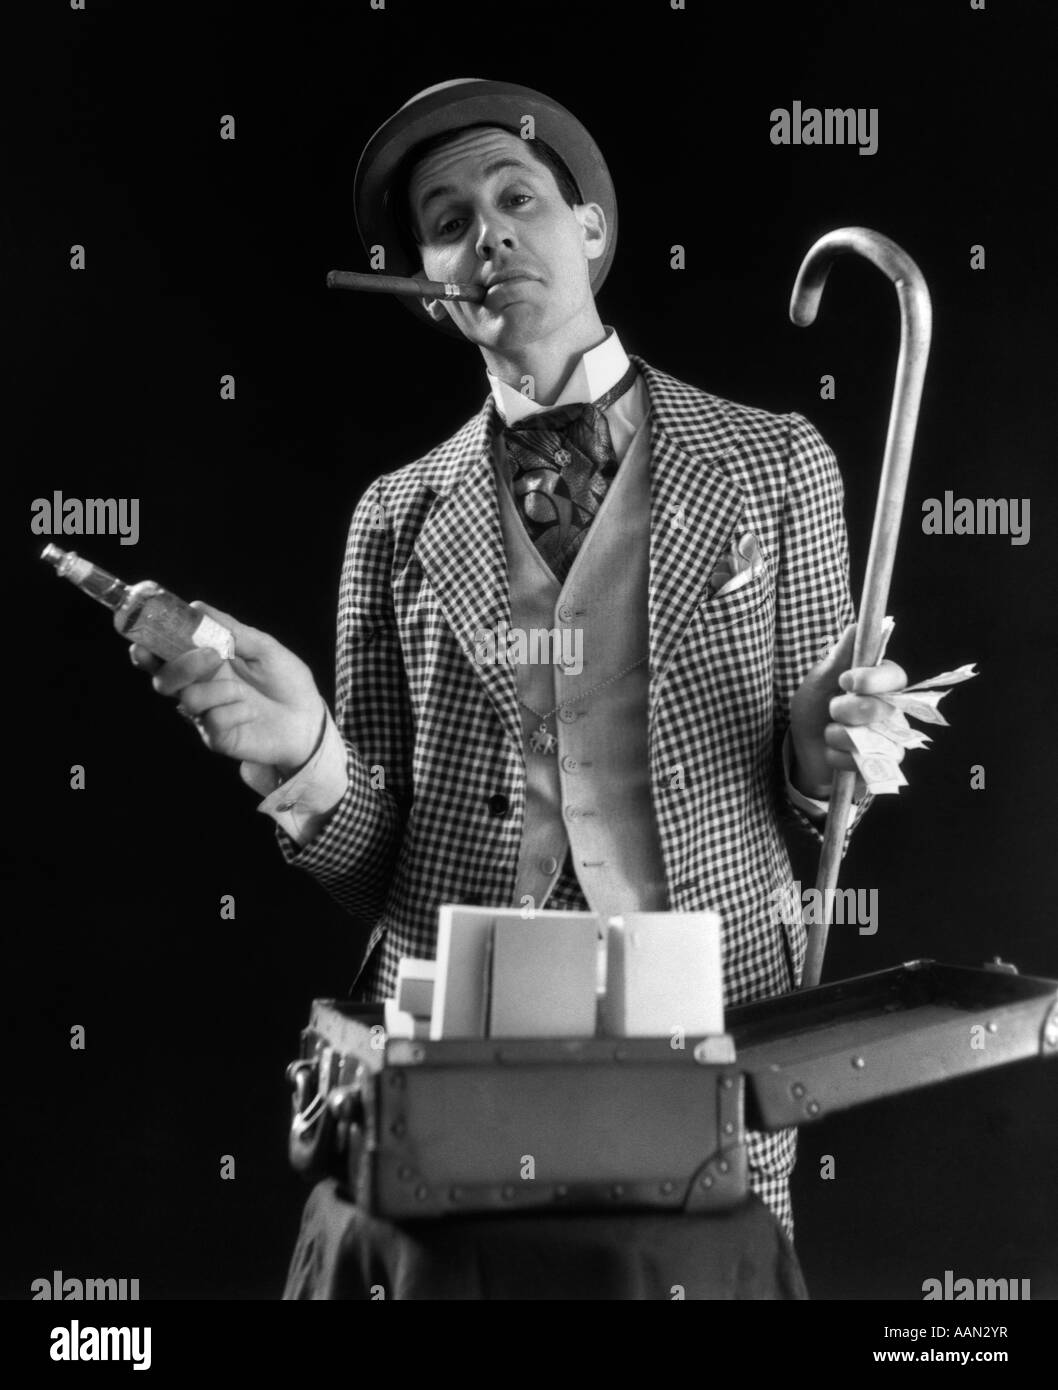 1930ER JAHREN BARKER KARIERTEN ANZUG ZIGARRE IM MUND HOLDING CANE GELD FLASCHE TONIC OFFEN KOFFERABLAGE, BLICK IN DIE KAMERA Stockfoto